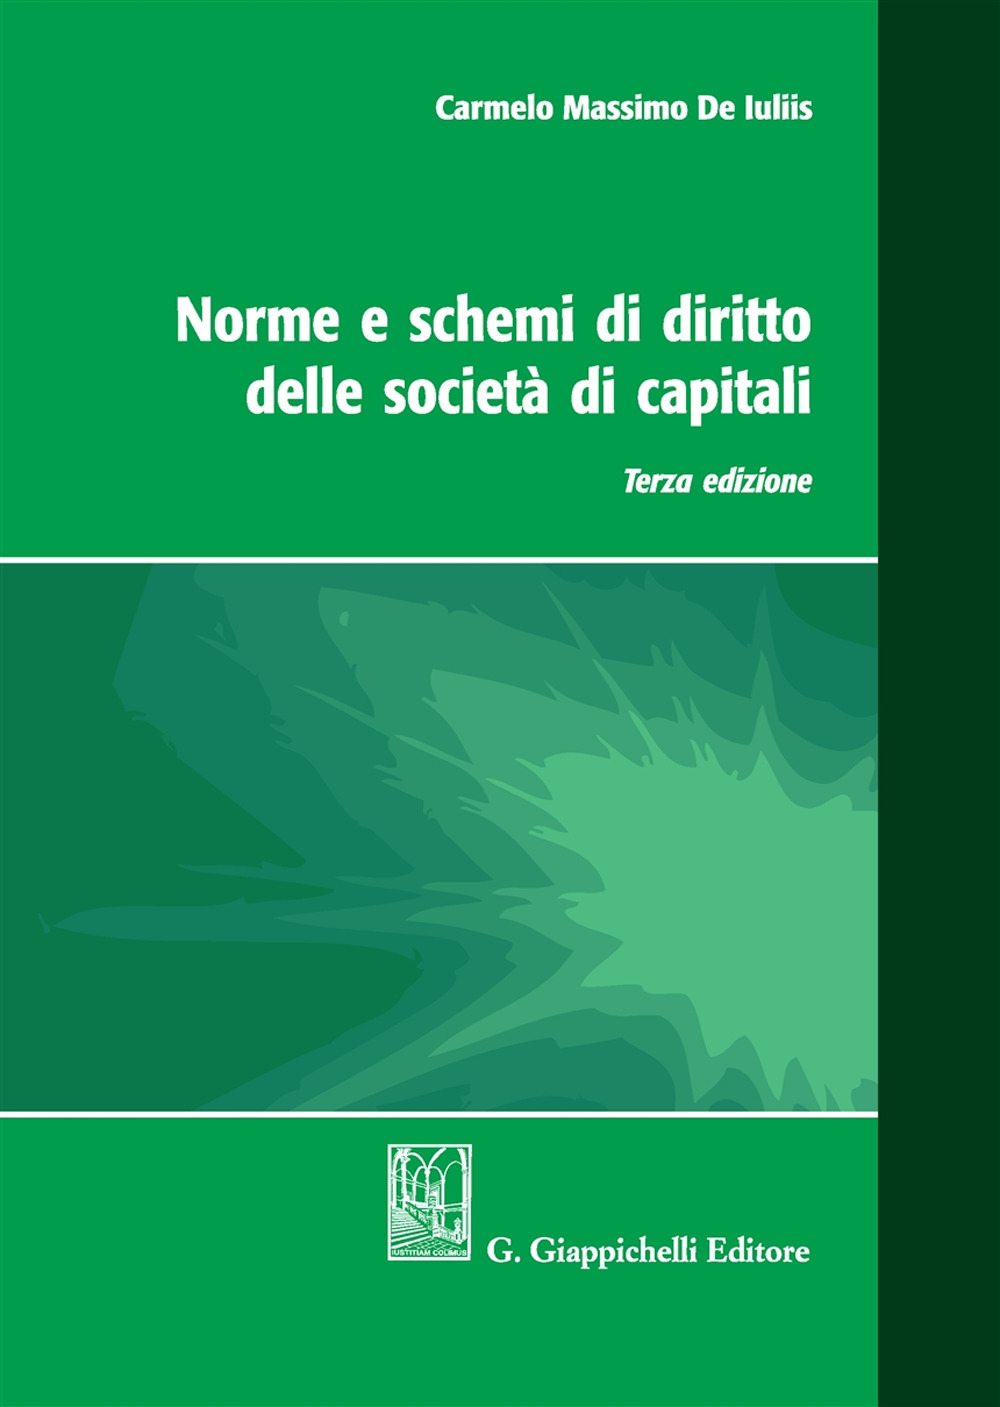 Norme e schemi di diritto delle società di capitali